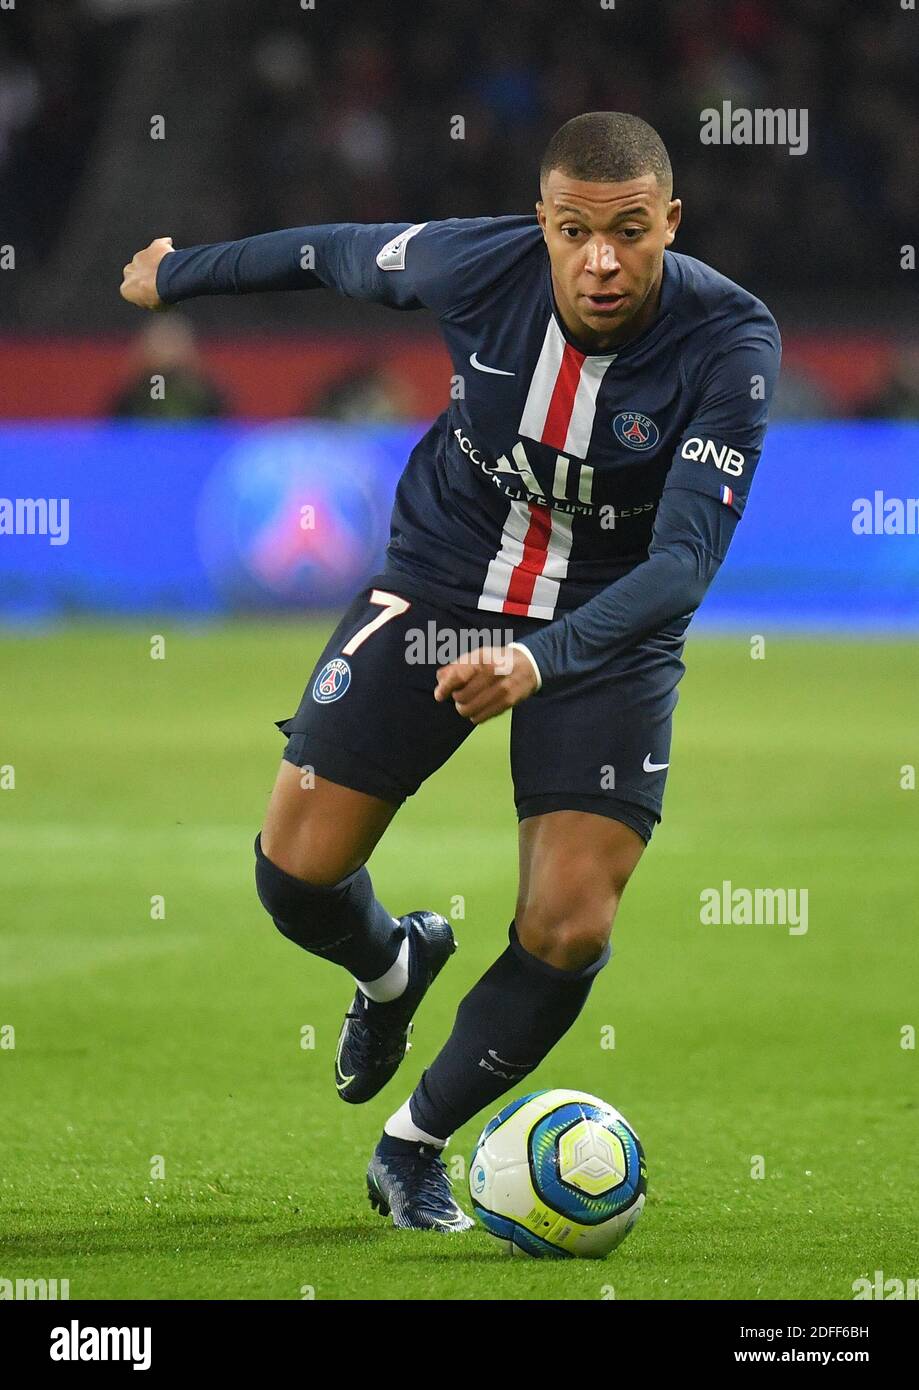 File photo dated October 27, 2019 of Paris Saint-Germain's Kylian Mbappé  during the Ligue 1 Paris Saint-Germain (PSG) v Olympique de Marseille (OM)  at the Parc des Princes stadium on in Paris,